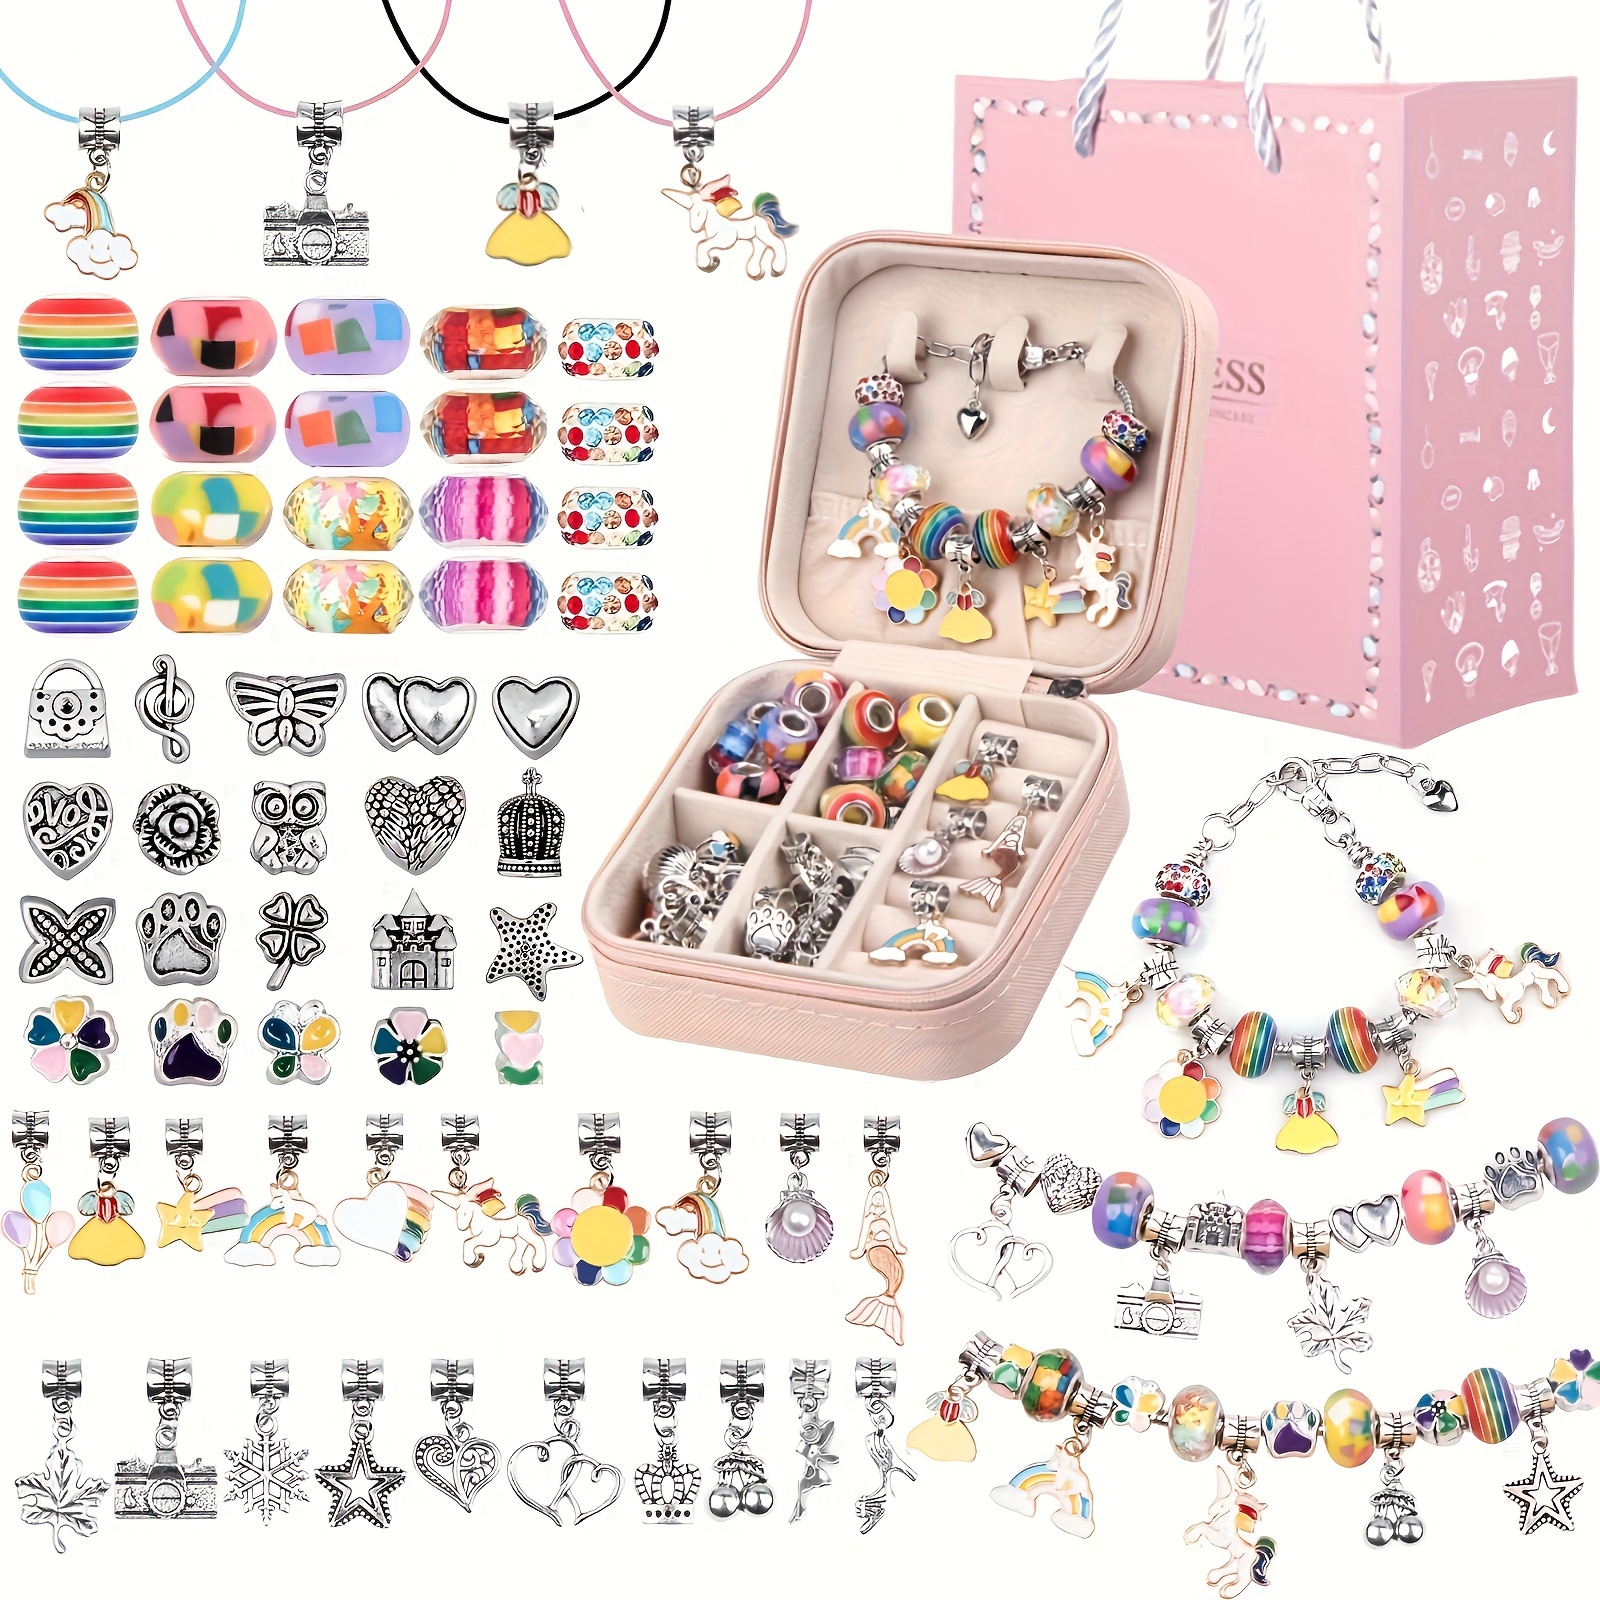 Comprar Kit para hacer pulseras con dijes, suministros para hacer joyas,  regalos para niñas adolescentes, manualidades para niñas de 8 a 12 años